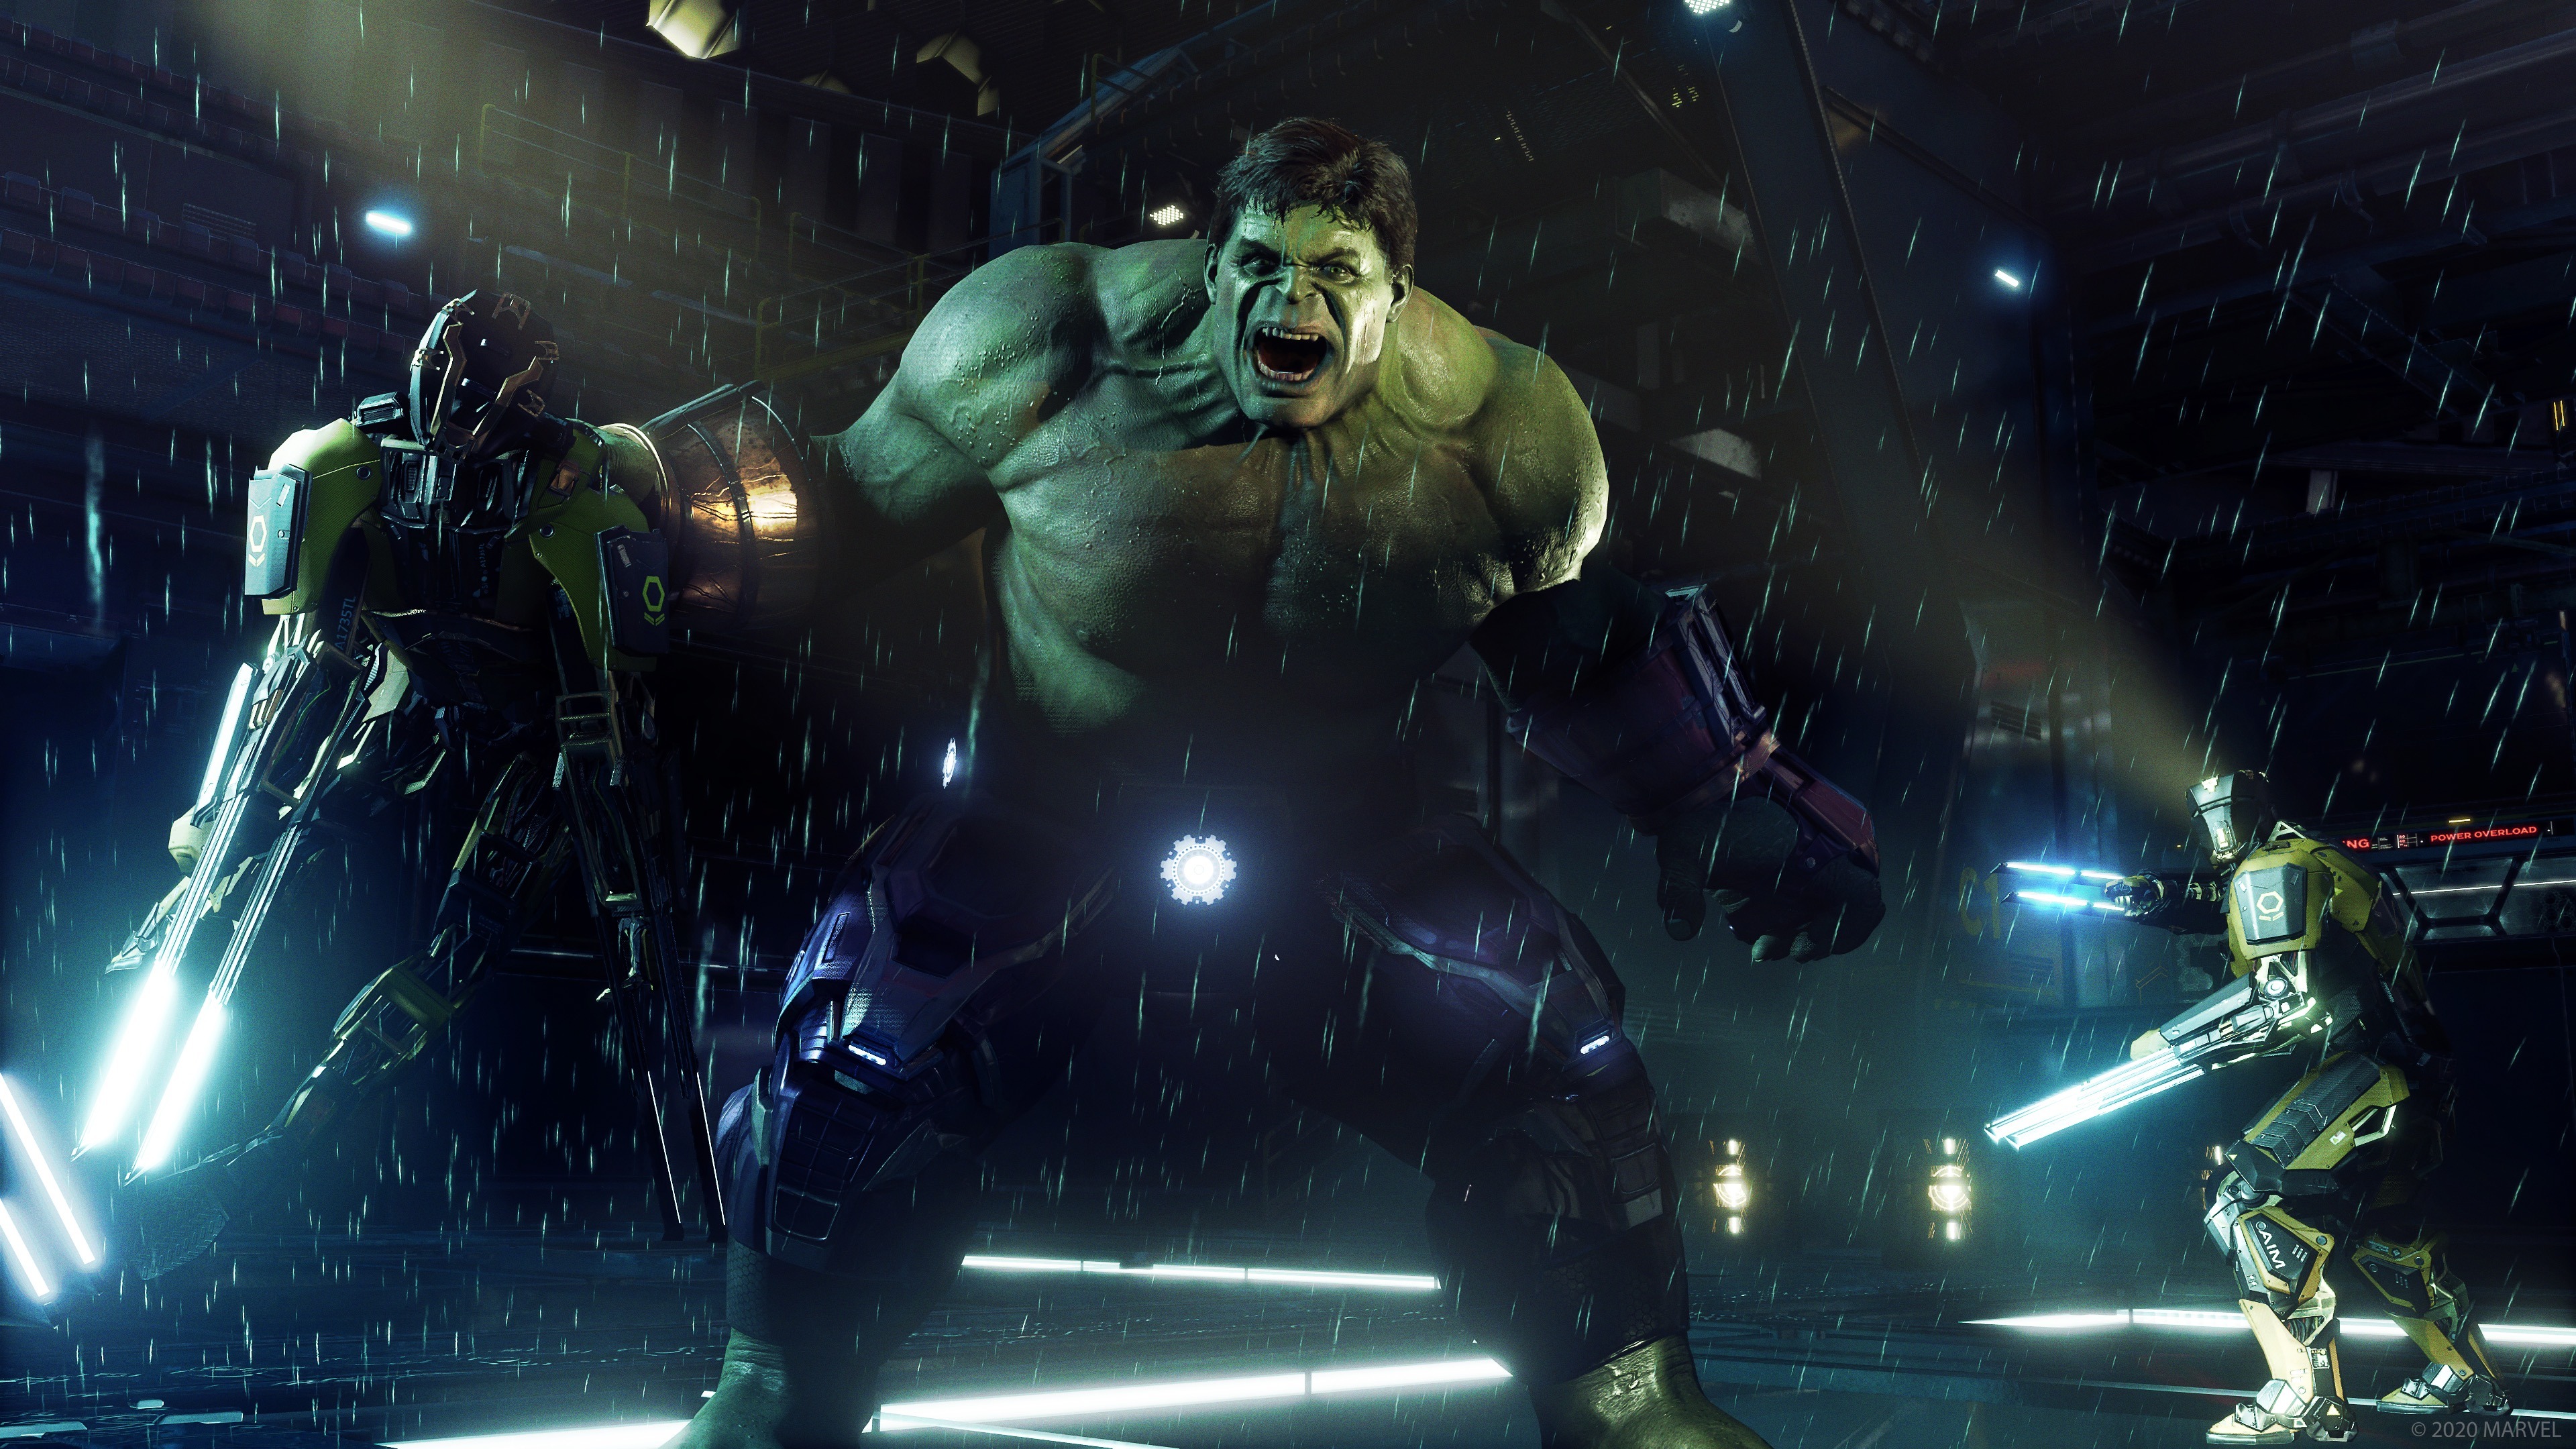 marvel's avengers, video game, hulk, the avengers